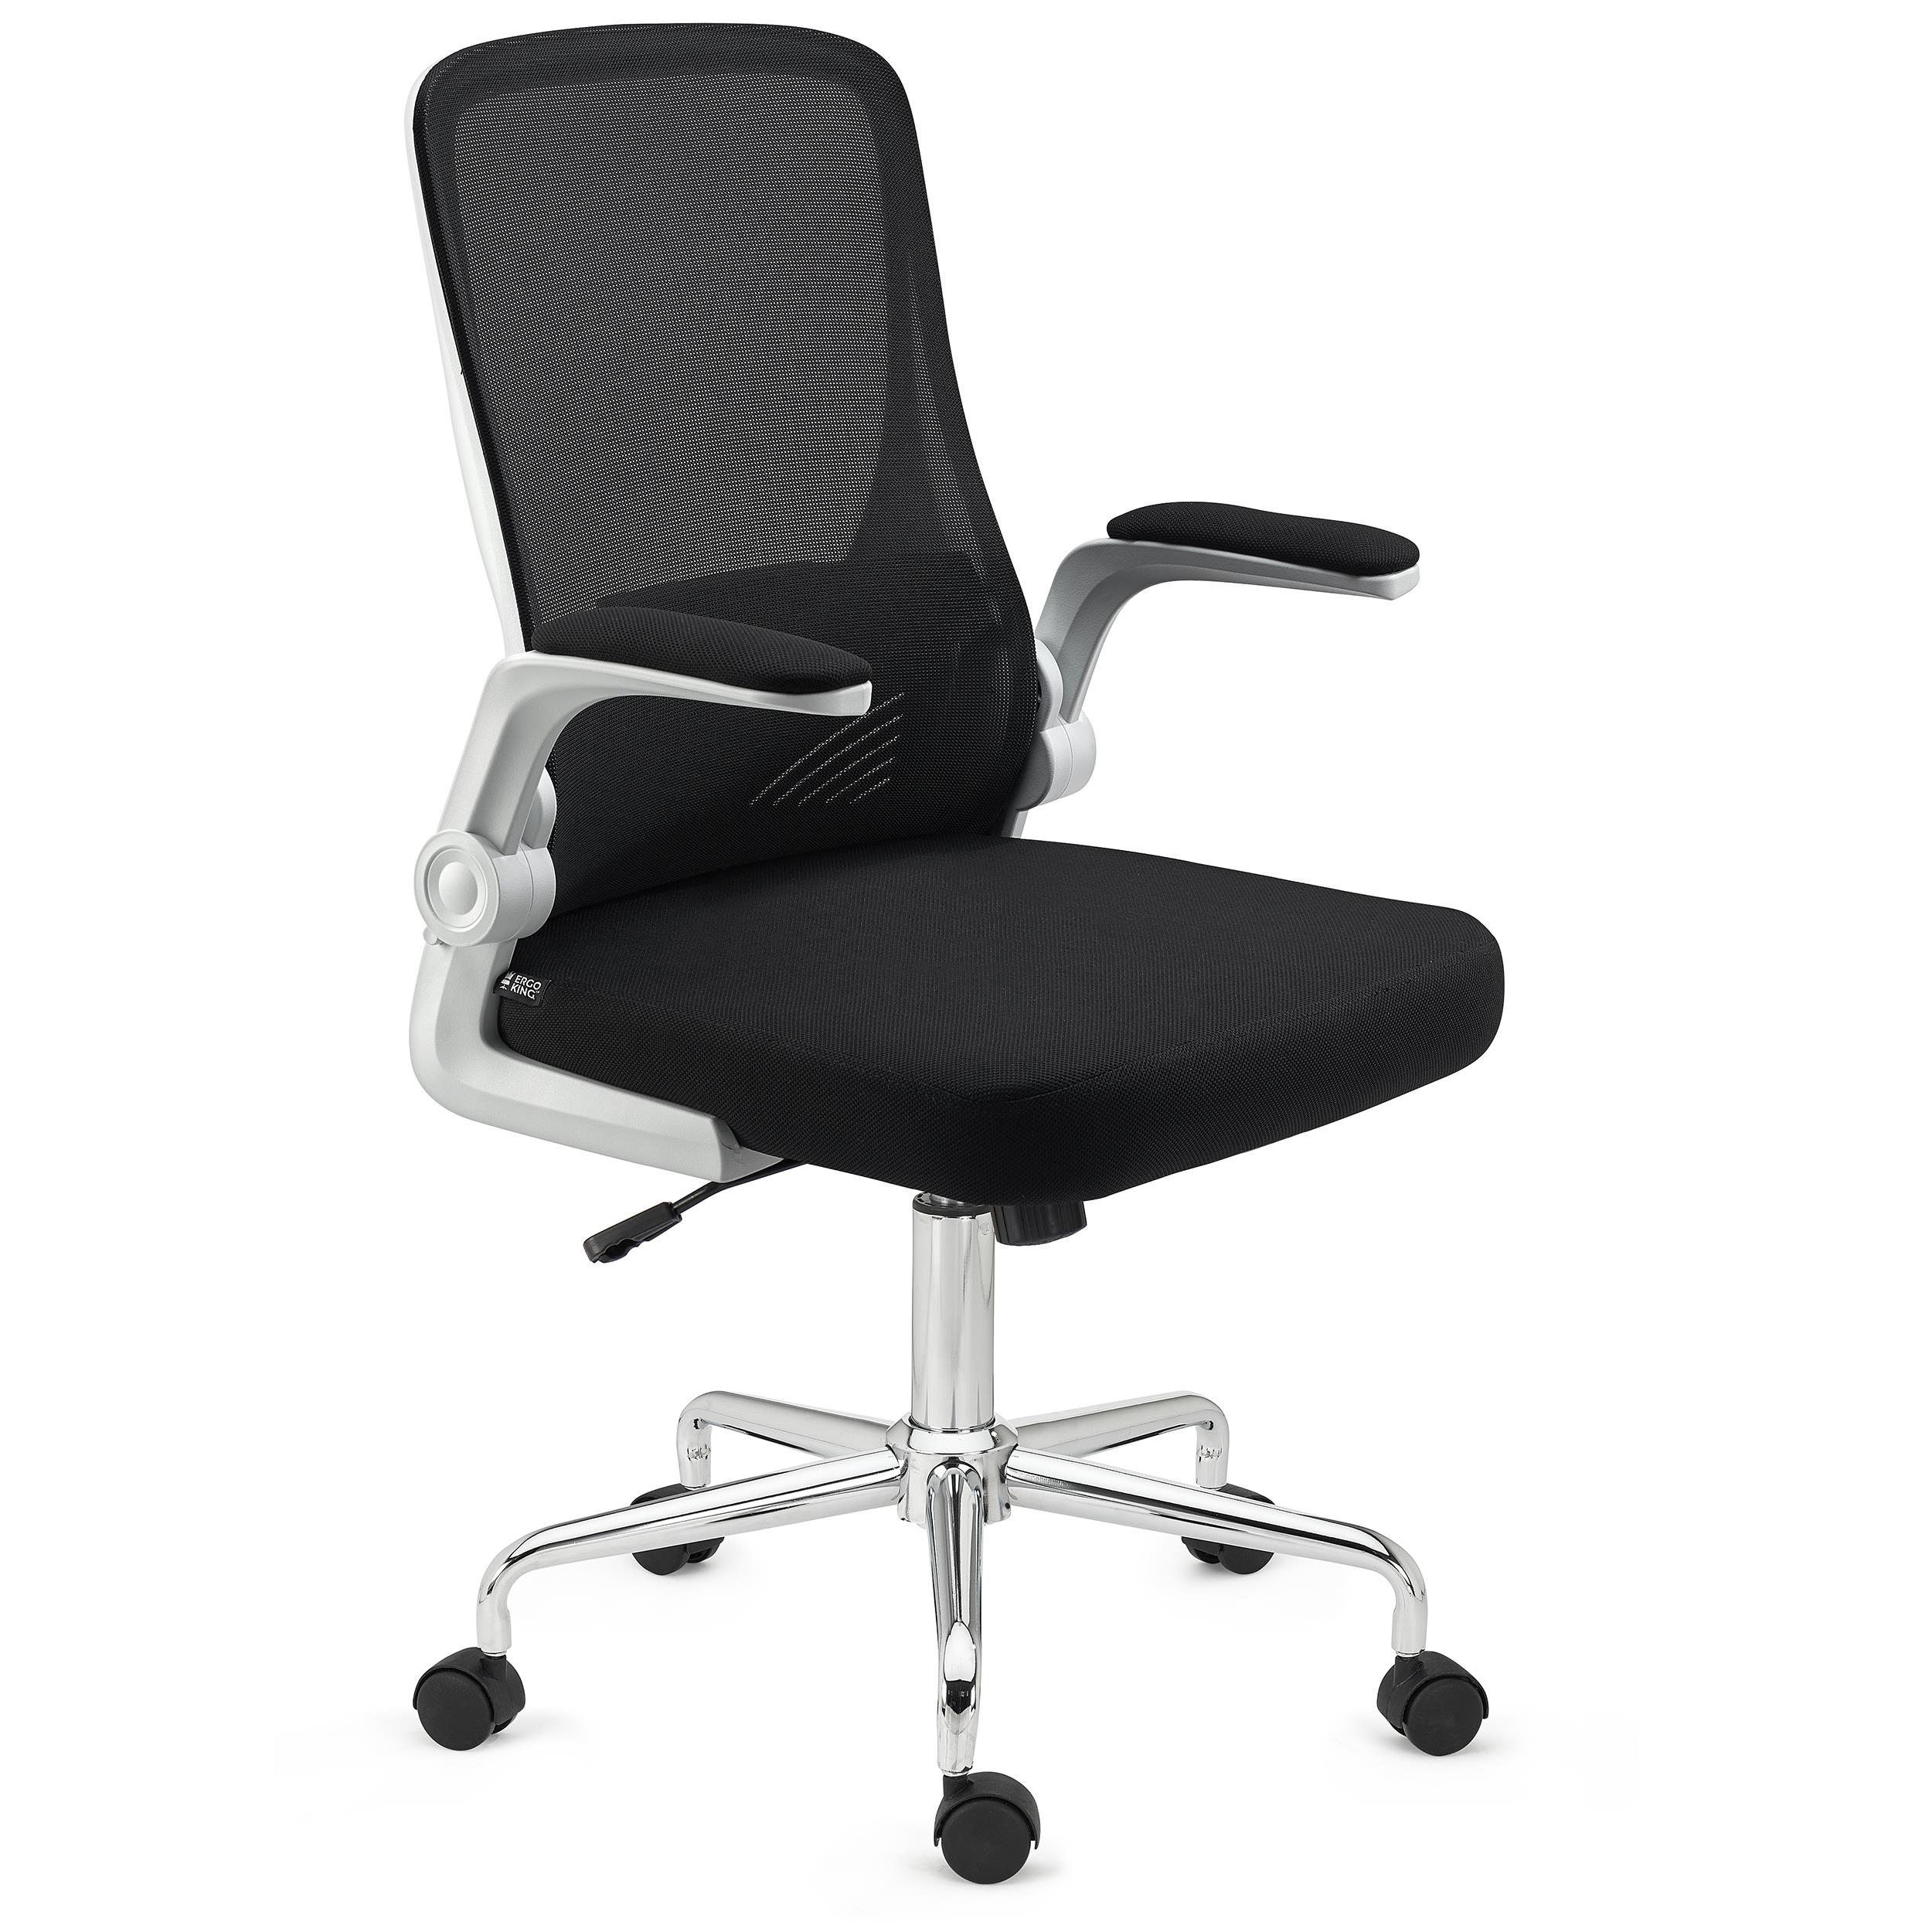 Ergonomischer Bürostuhl FOLD, klappbare Rückenlehne und Armlehnen, atmungsaktiver Netzstoff, Farbe Schwarz/Weiß